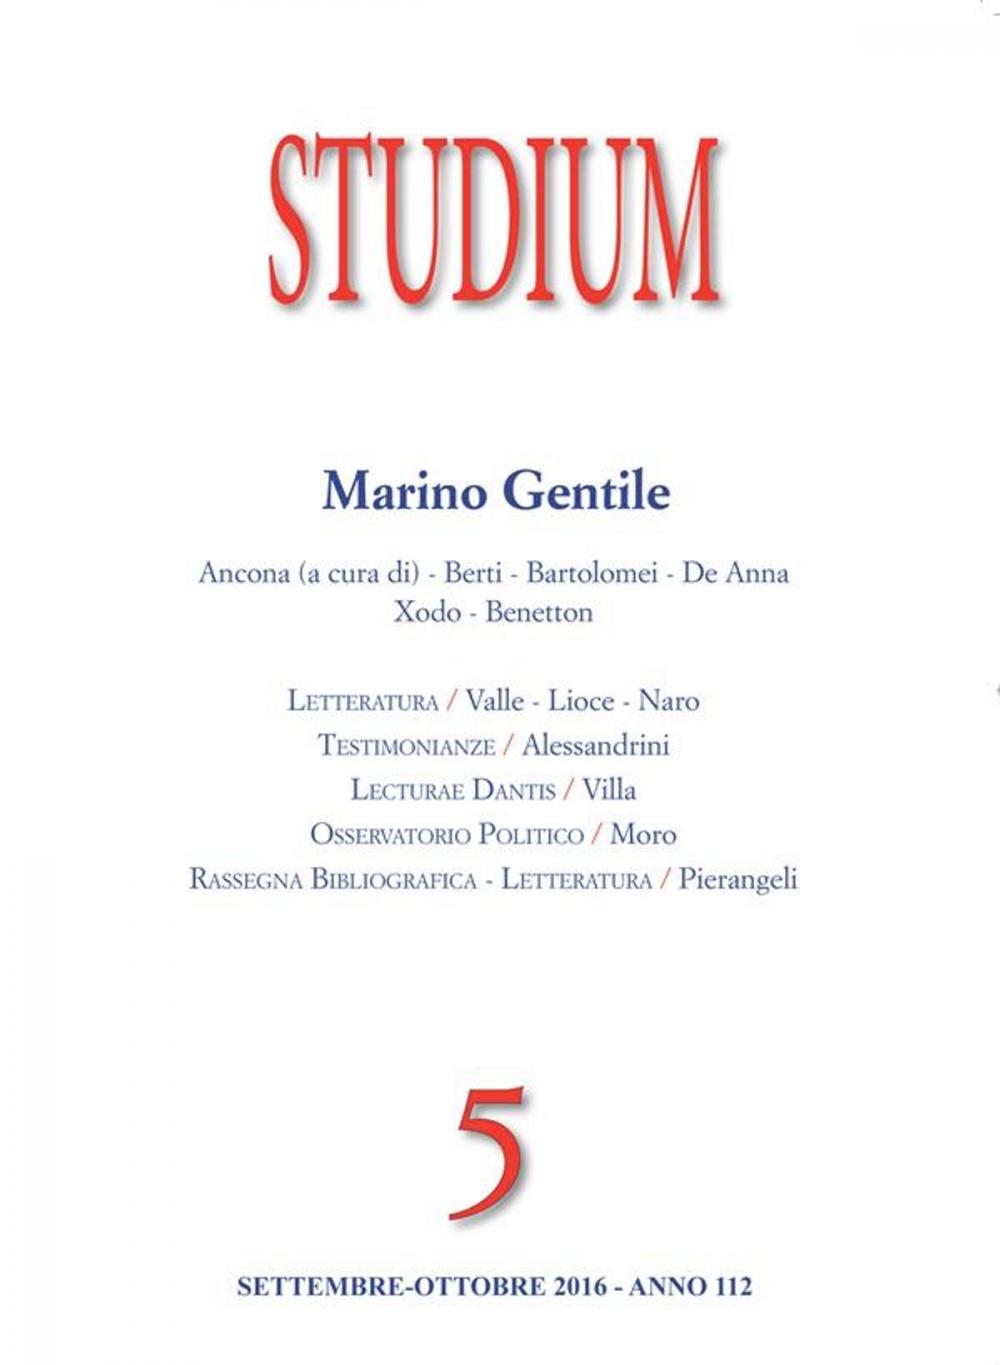 Big bigCover of Studium - Marino Gentile